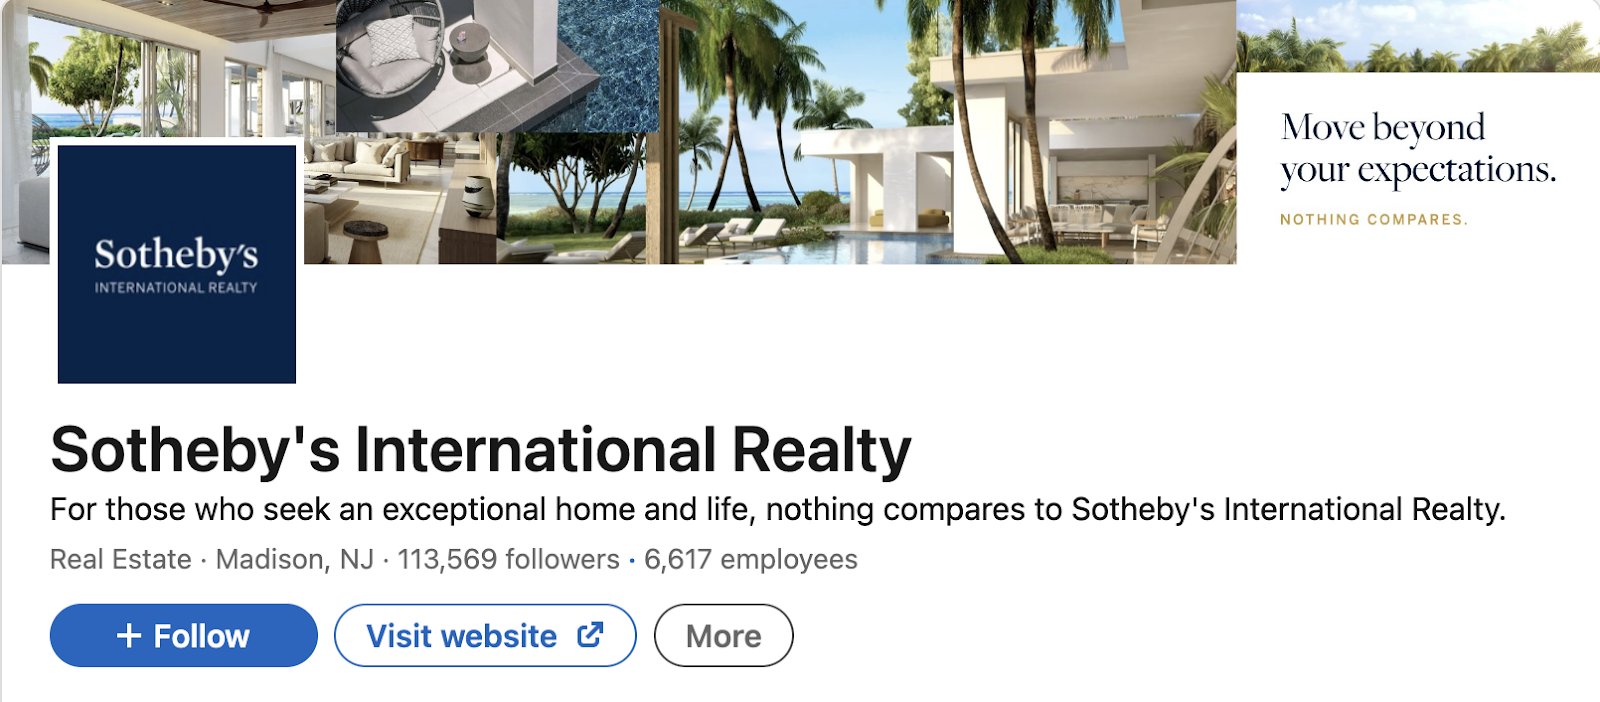 Sothebys-International-Realty-social-media